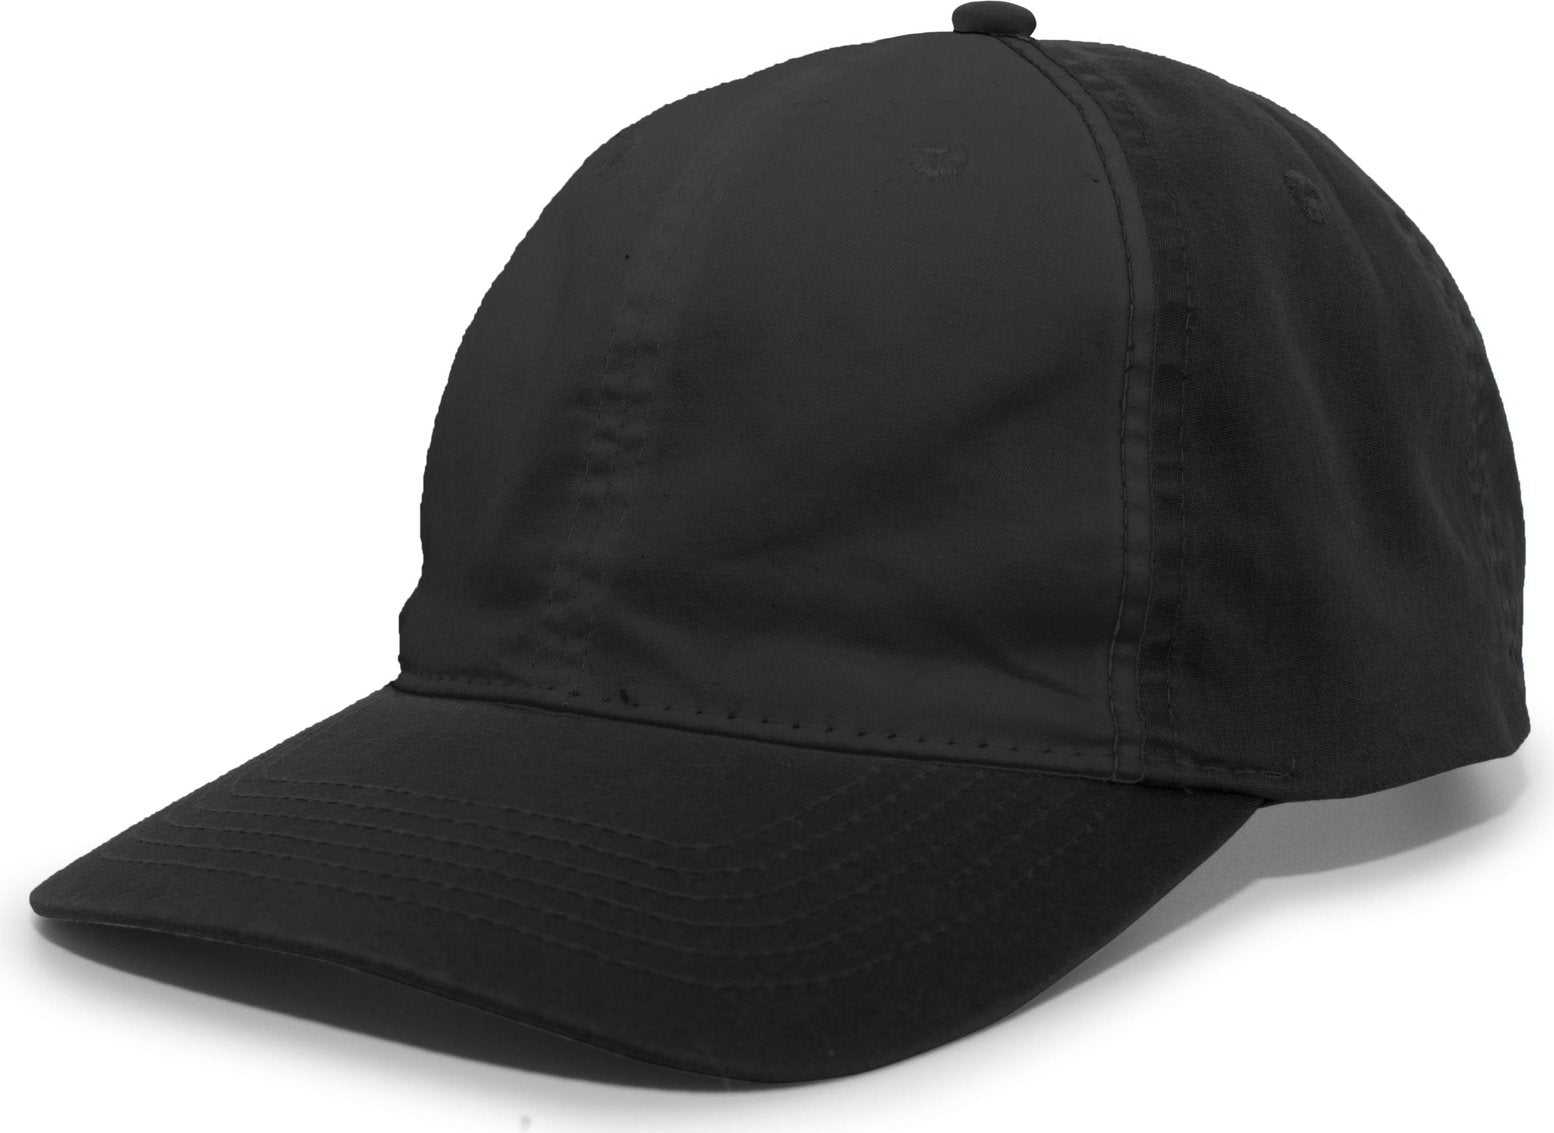 Pacific Headwear V57 Vintage Cotton Buckle Back Cap - Black - HIT a Double